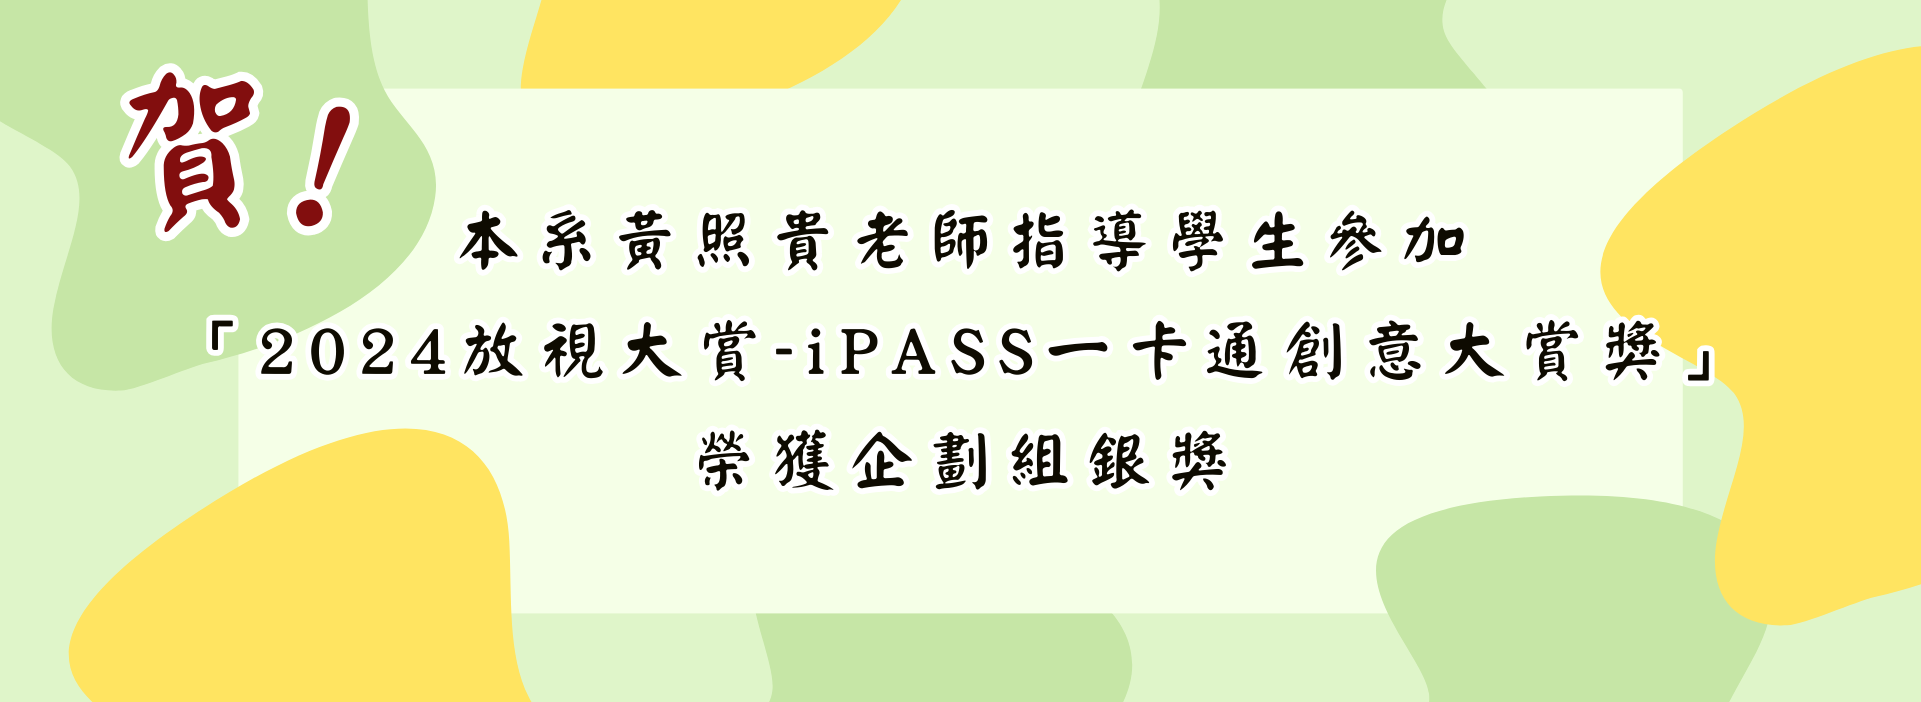 iPASS 一卡通創意大賞獎